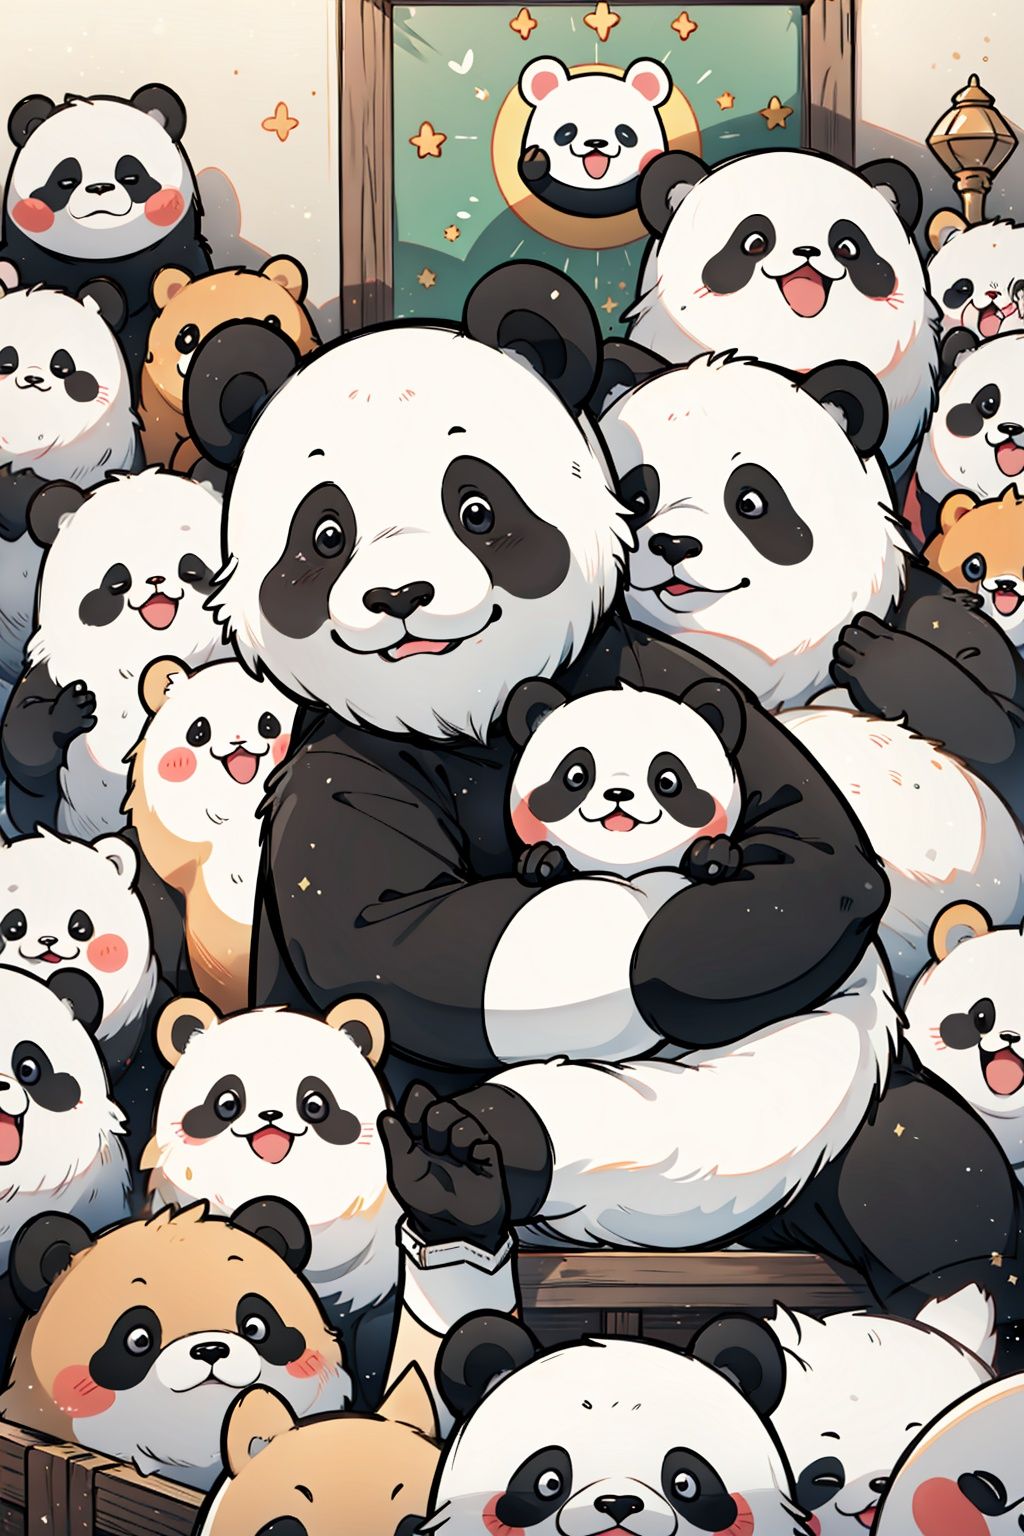 Animal emojis, (panda: 2.0),Crowded,